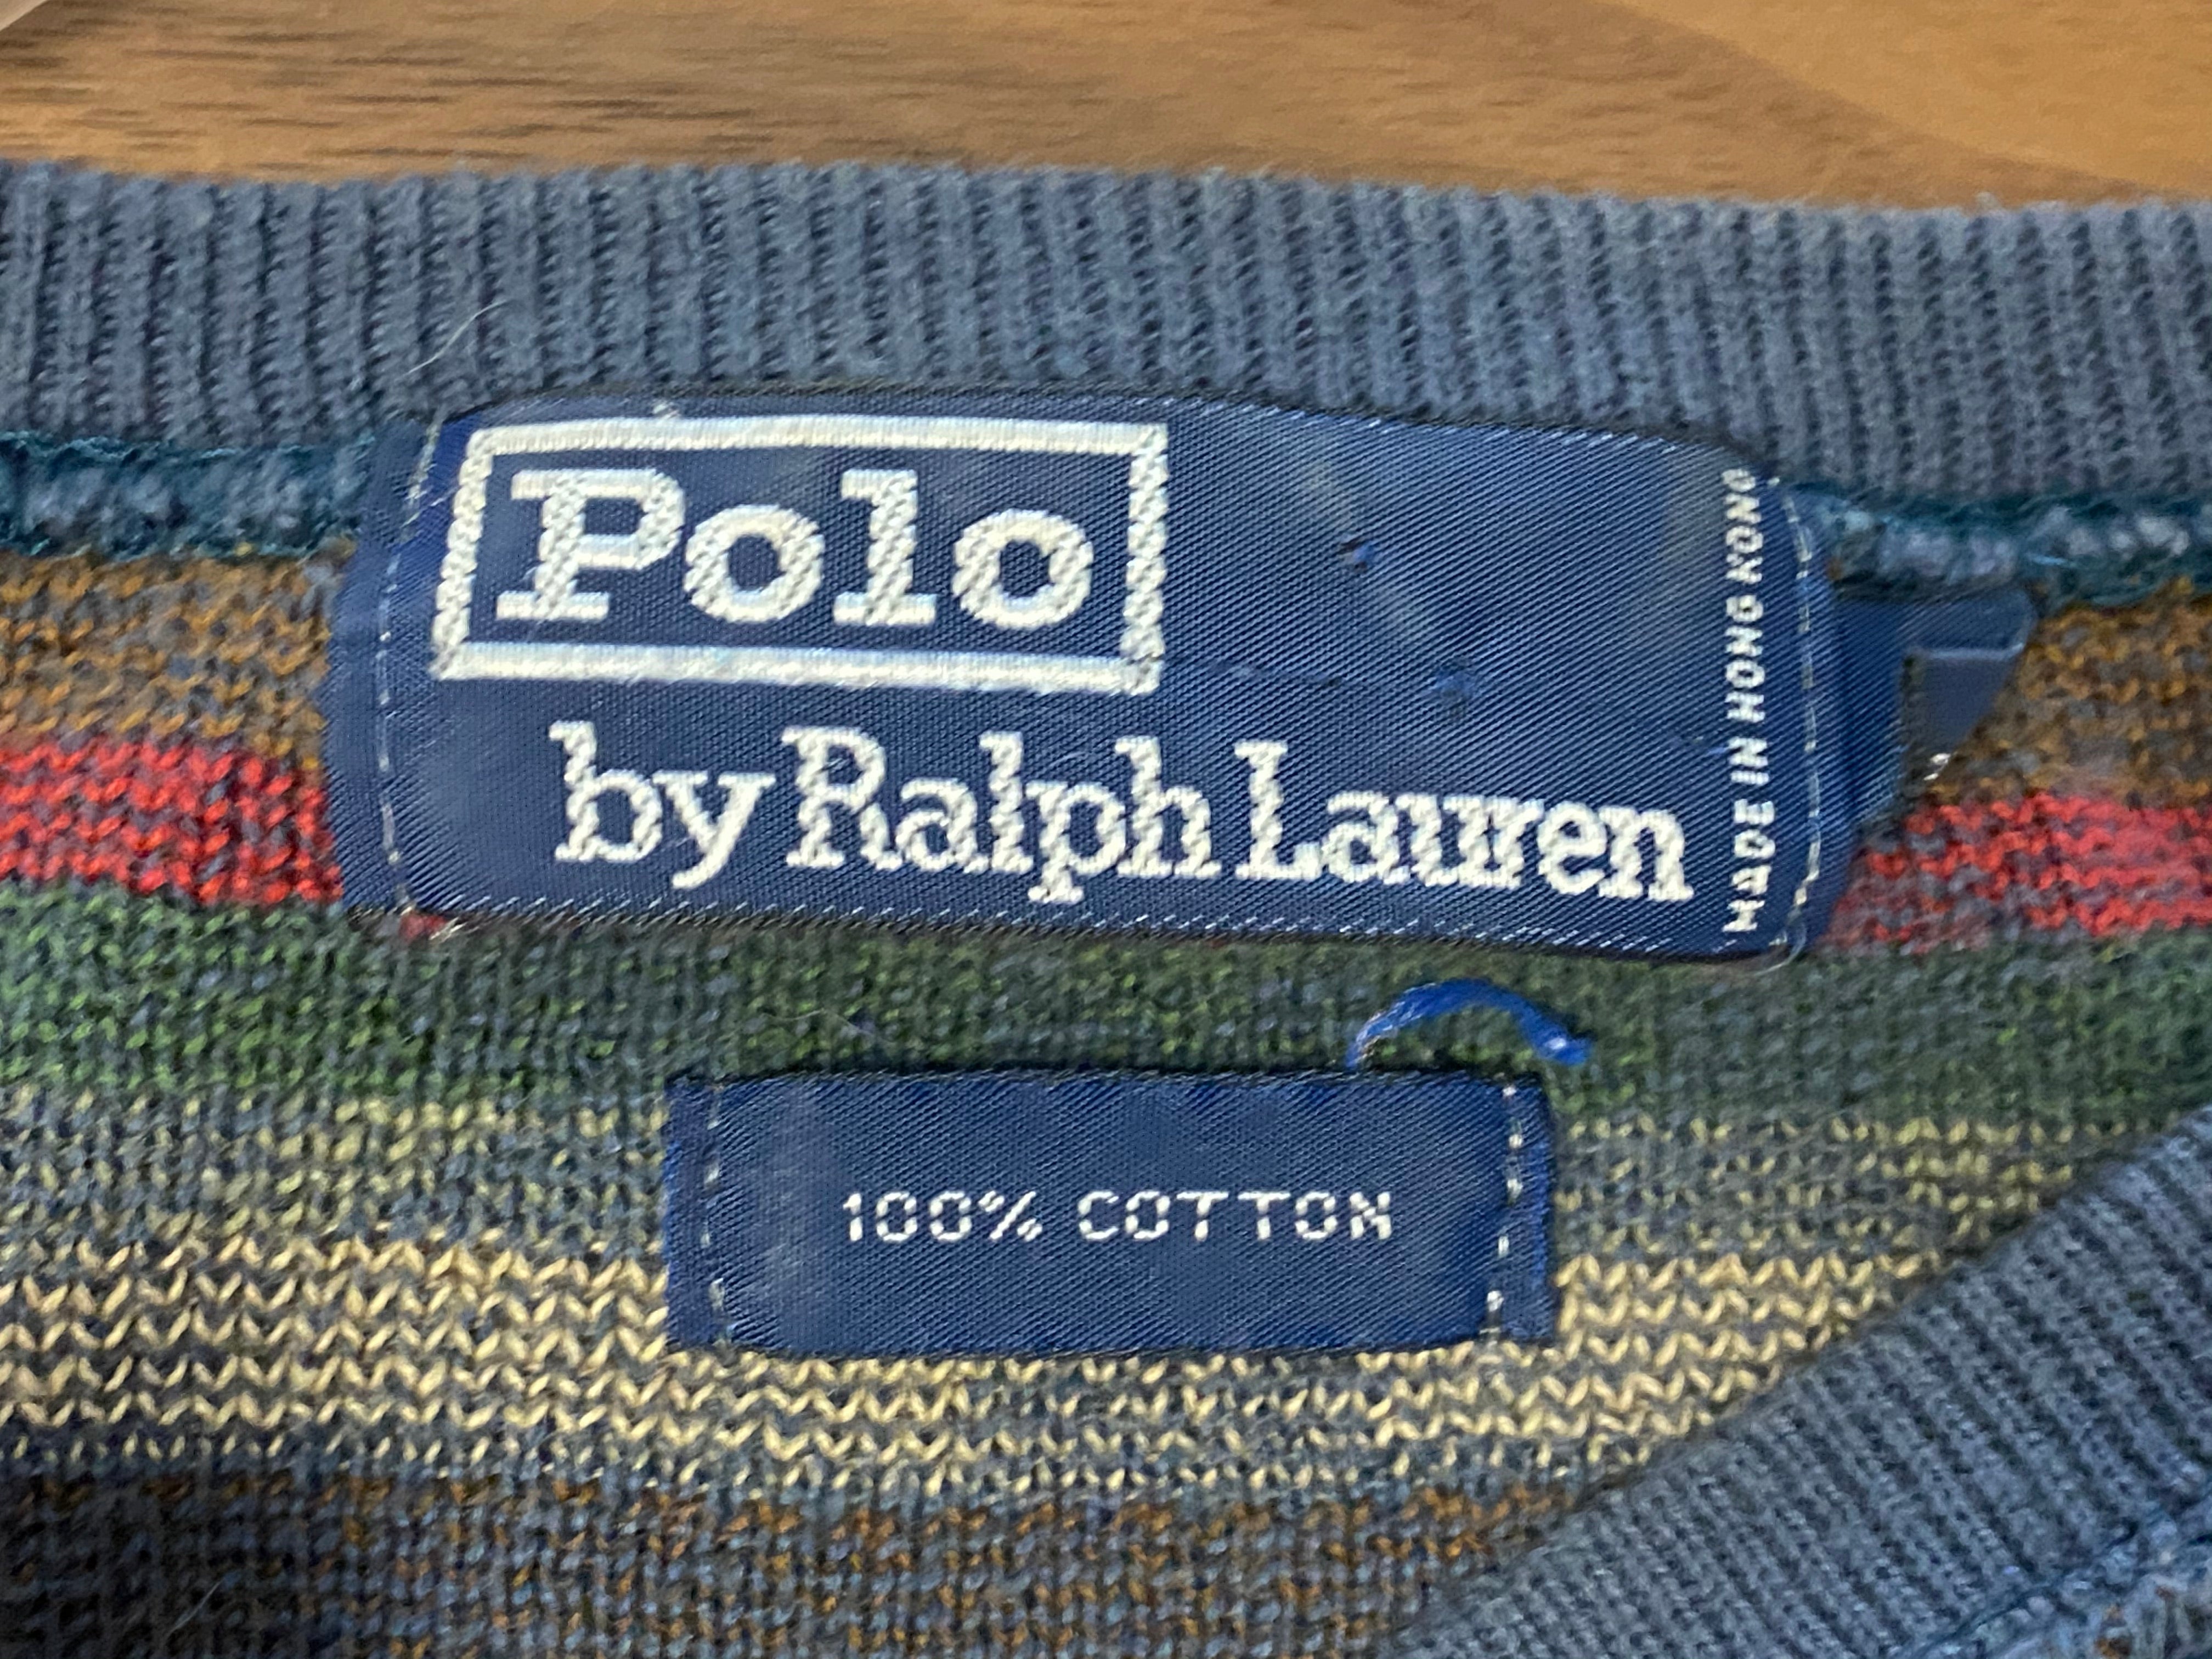 Polo Ralph Lauren Native Knit Sweater - Blue